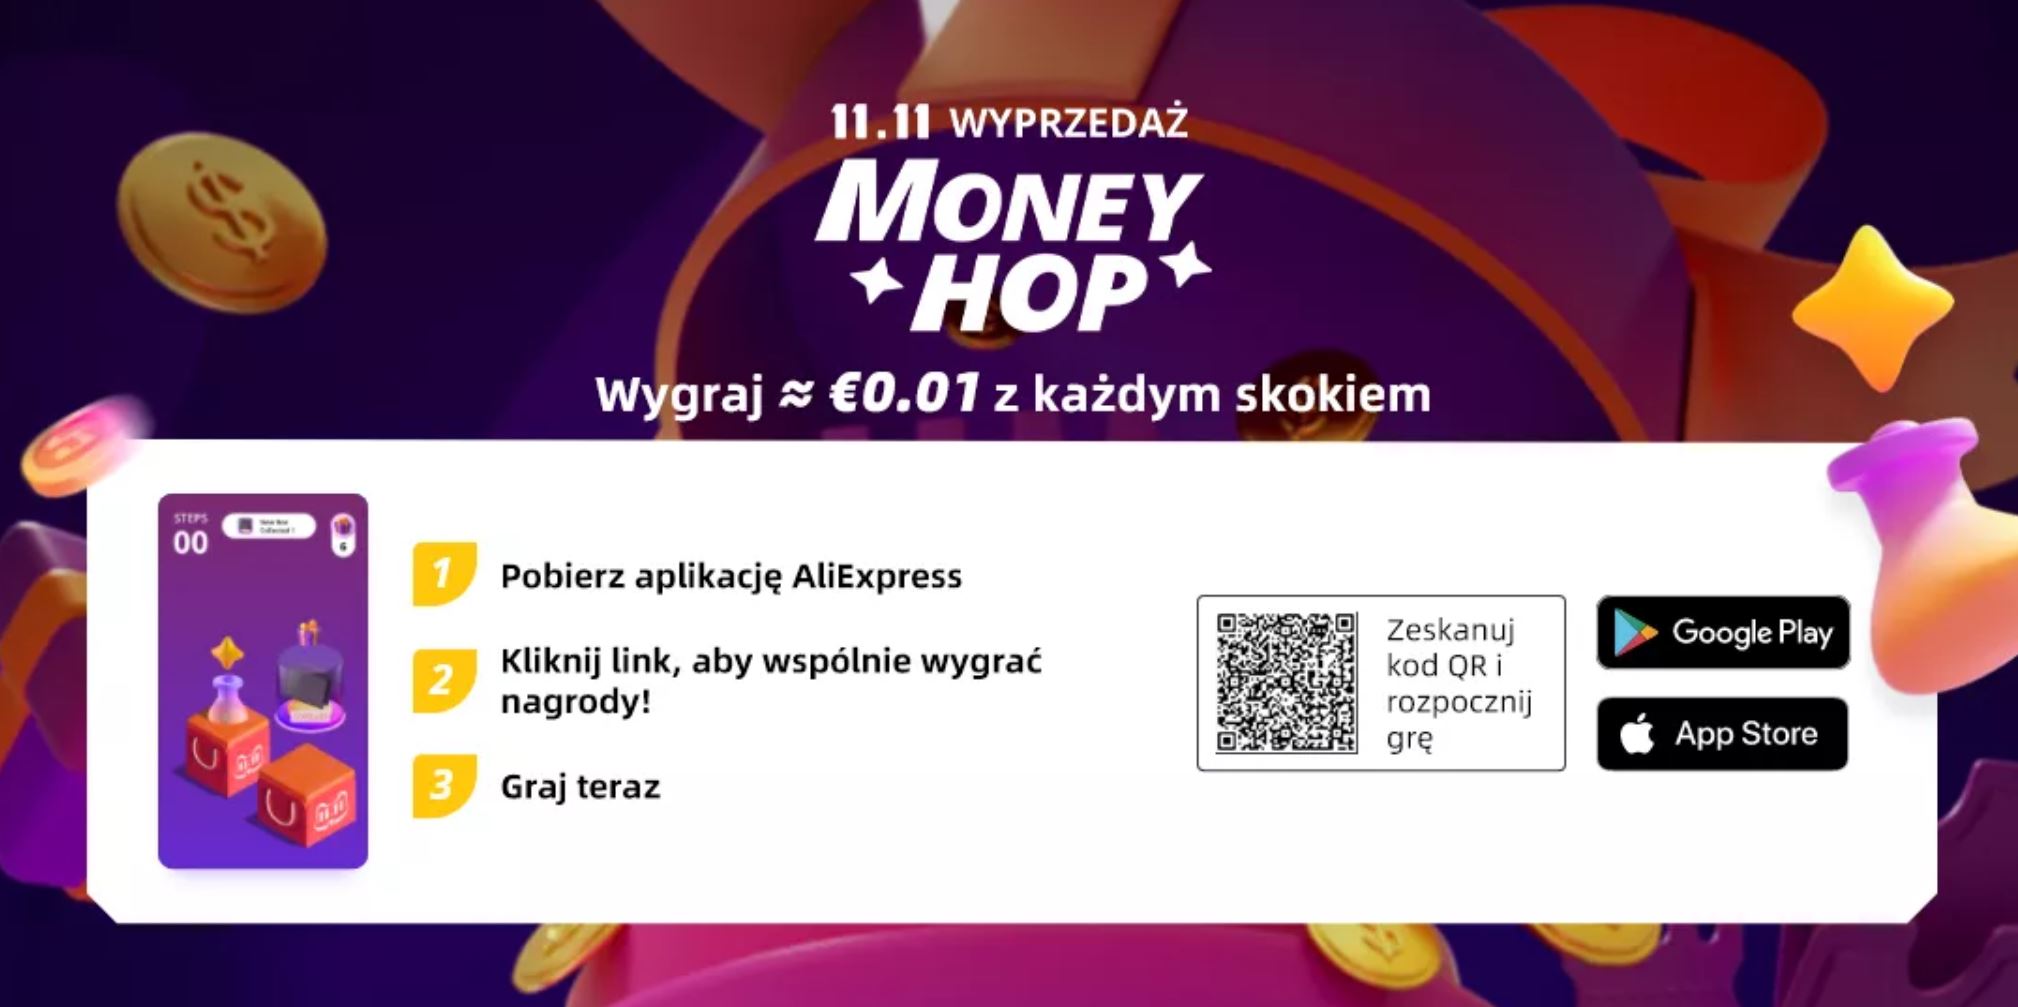 gra Aliexpress na smartfony - kod QR - promocja 1111 - money hop - zasady promocji